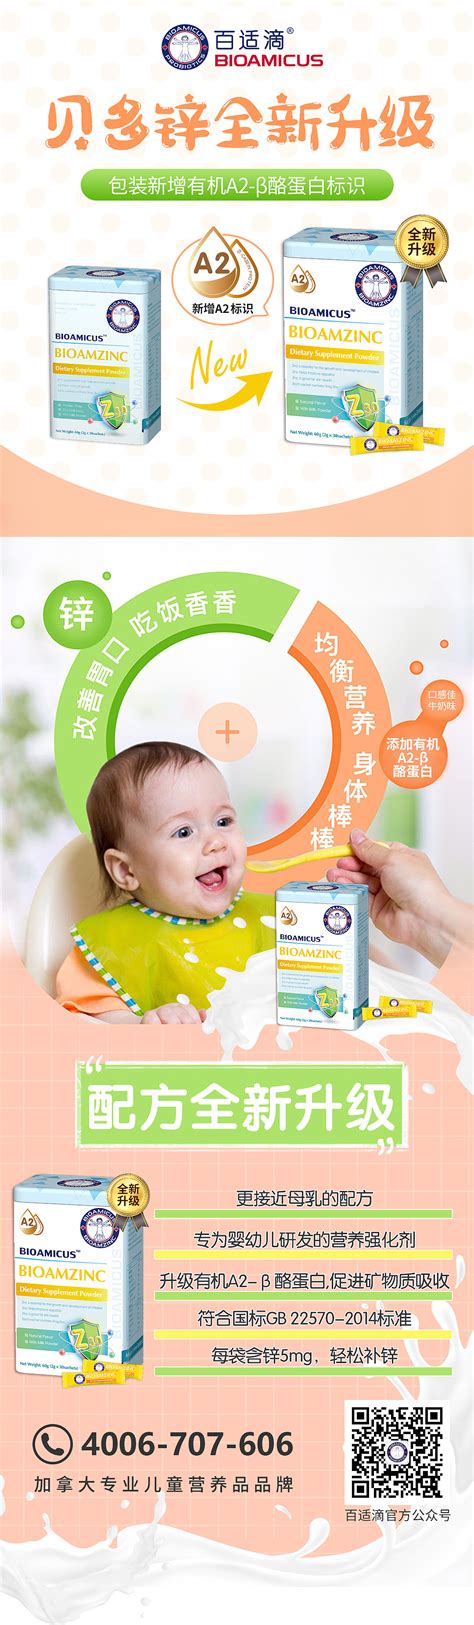 母婴营养品营销推广方案